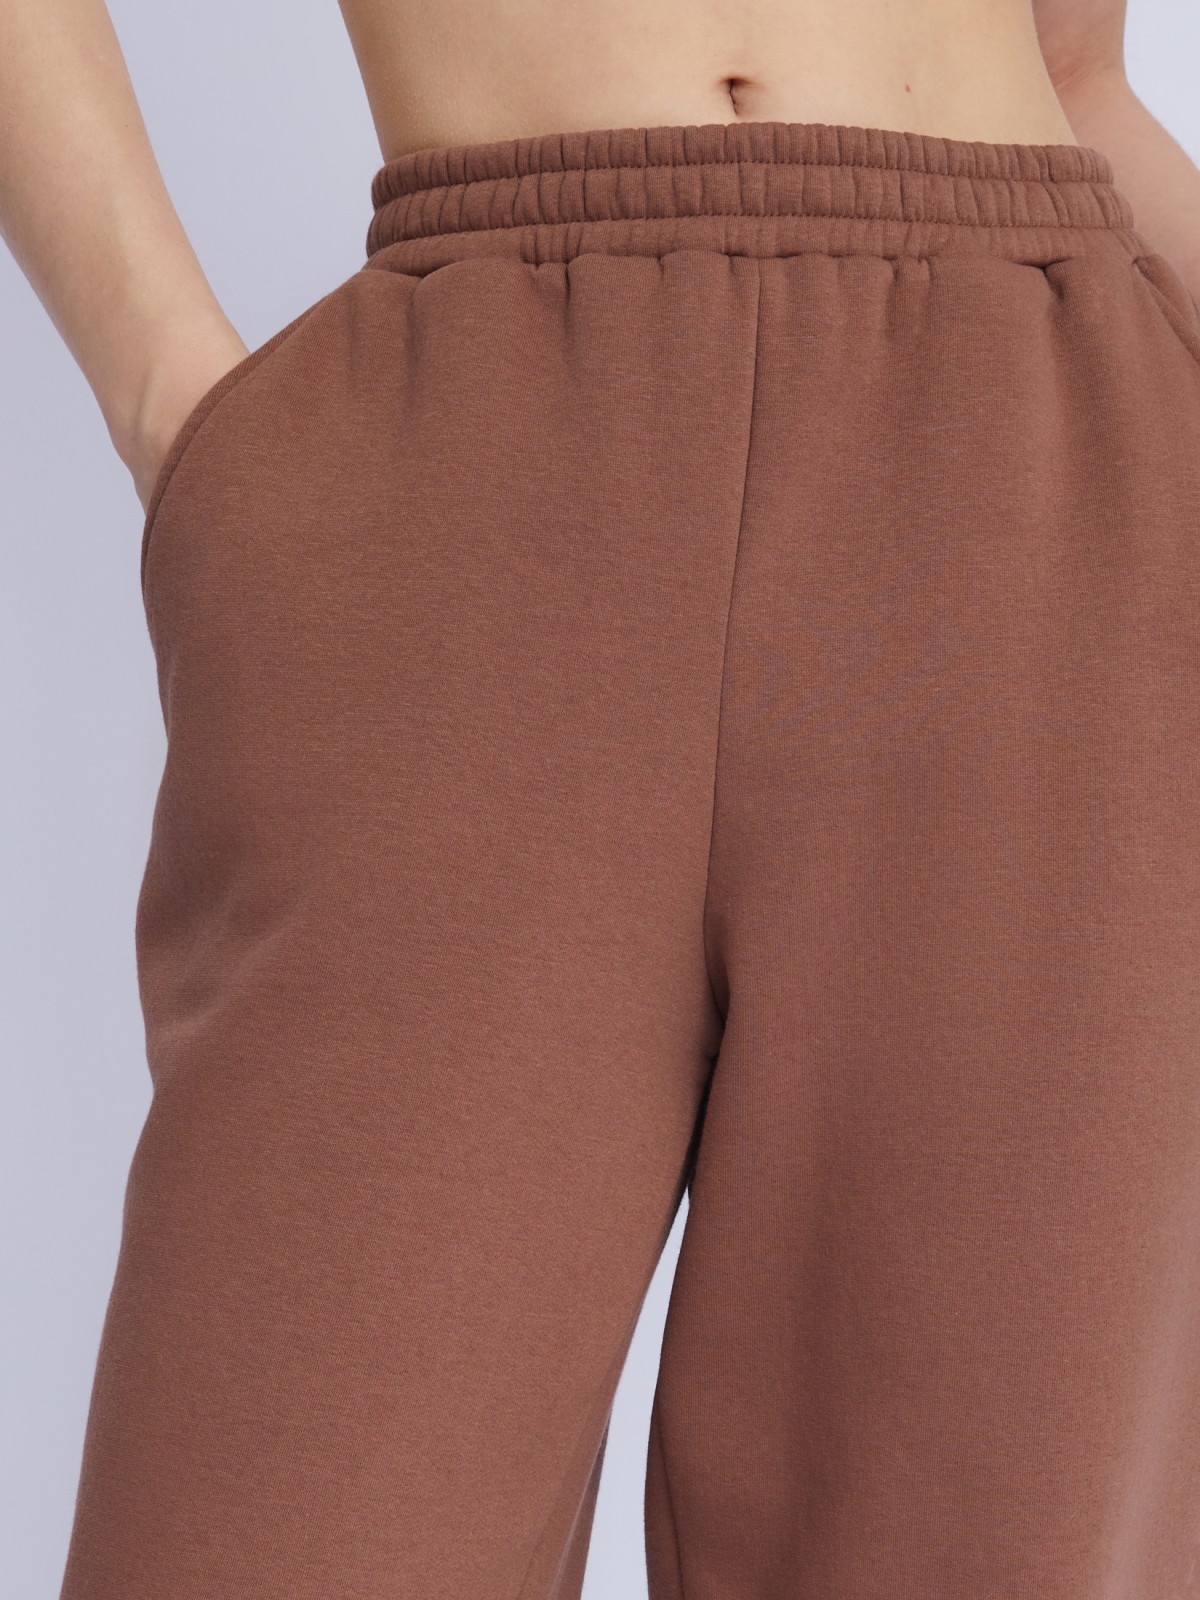 Утеплённые трикотажные брюки-джоггеры с поясом на резинке zolla 223337643022, цвет коричневый, размер XS - фото 4